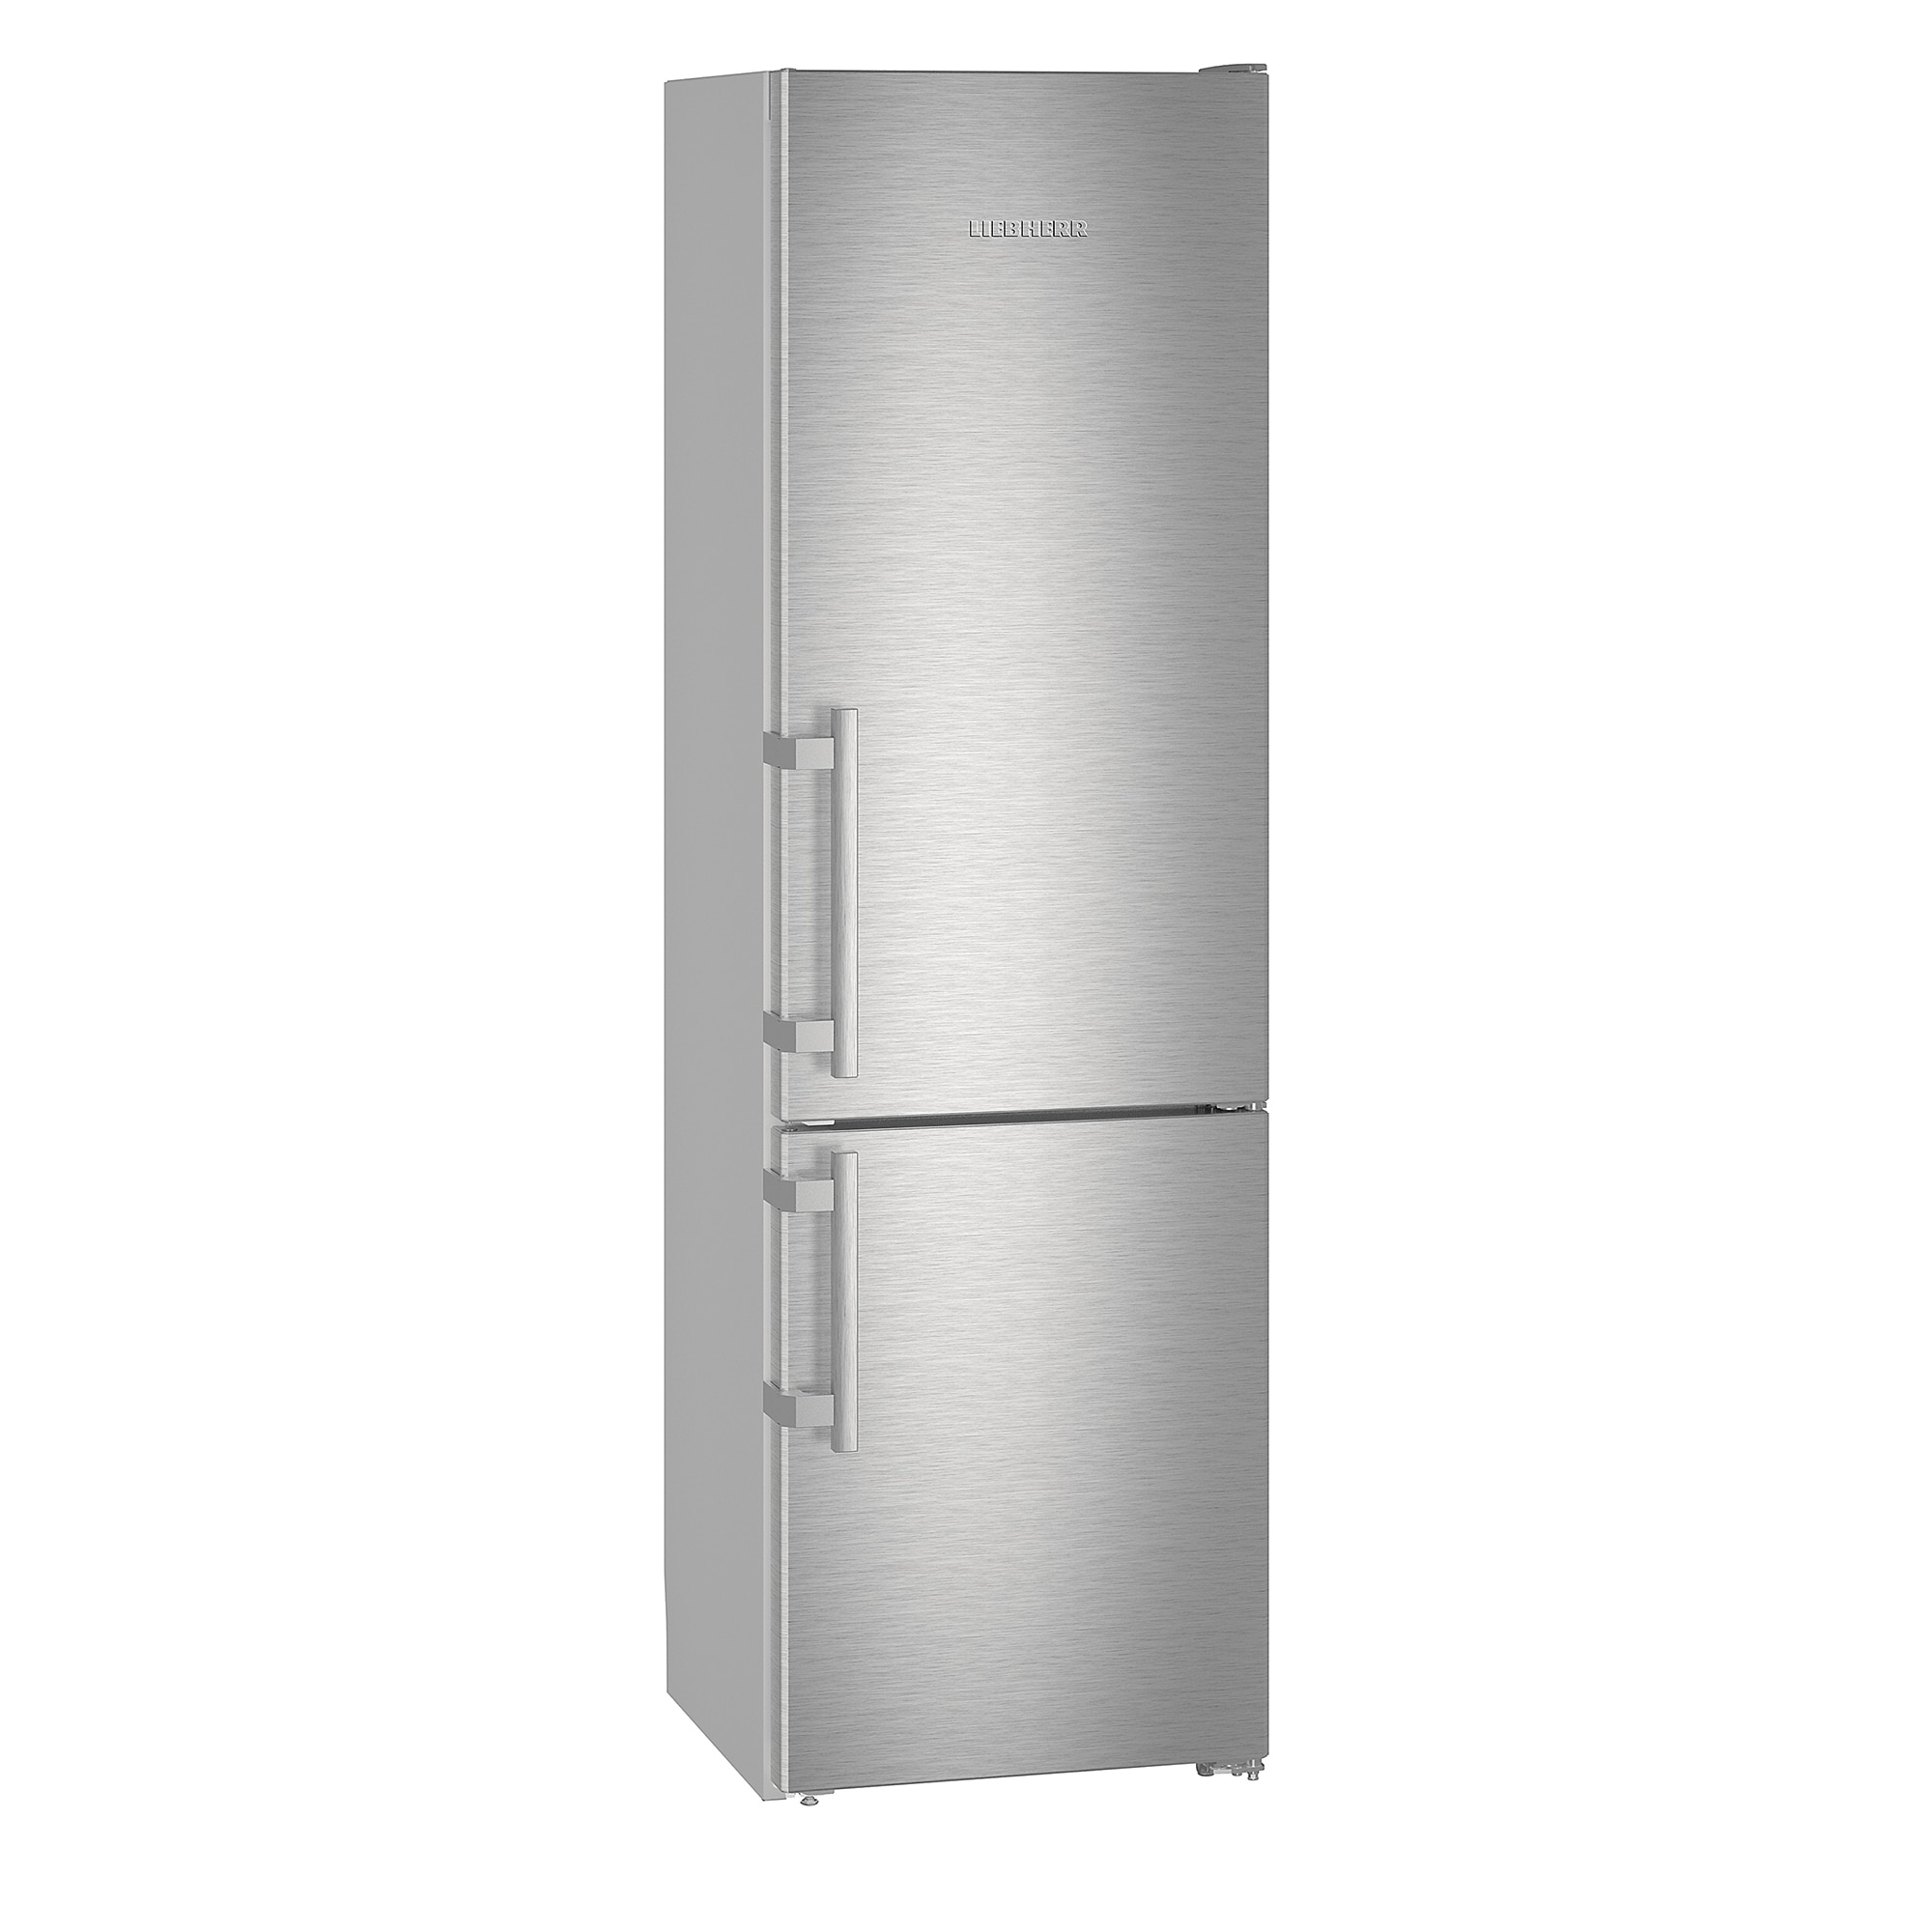 Хладилник Liebherr Cuef 4015 с обем от 358 л.